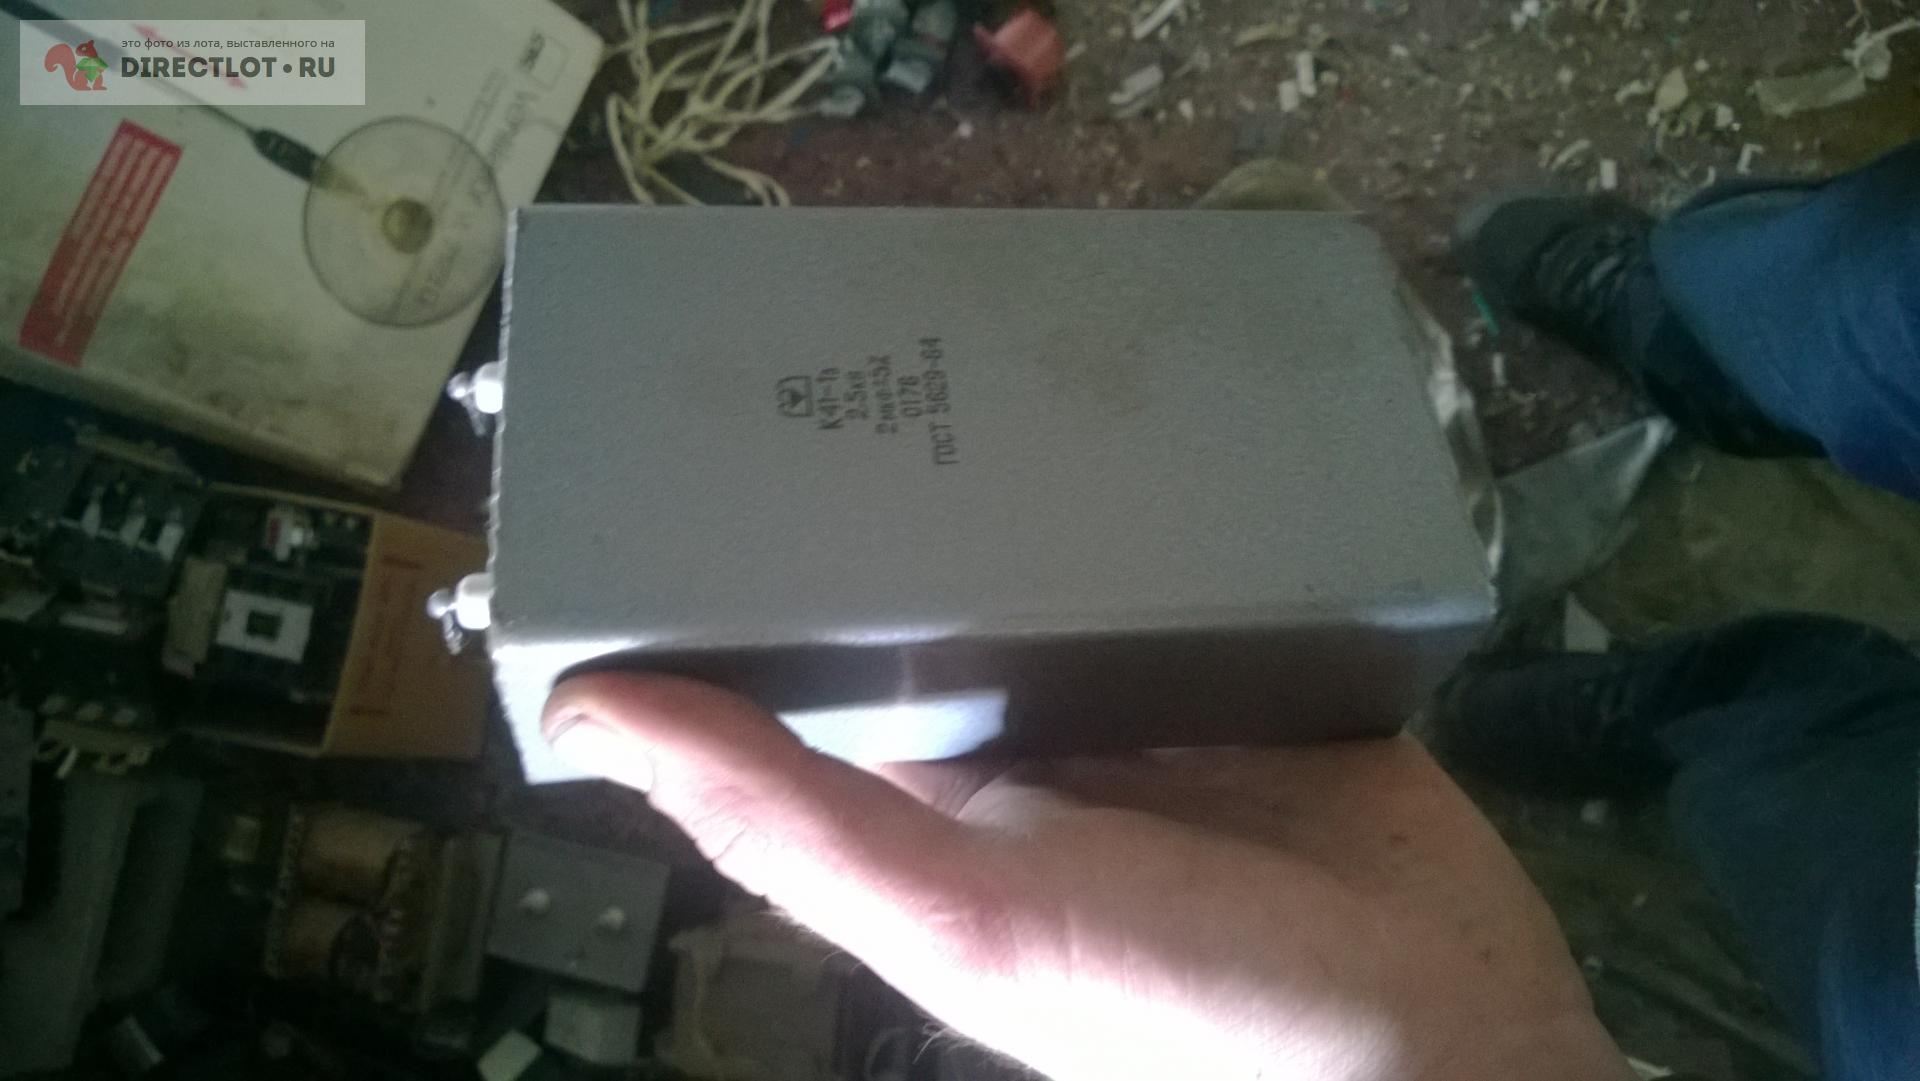 Продам конденсатор К41-1а 2,5 кВ 2 мкФ  на DIRECTLOT.RU